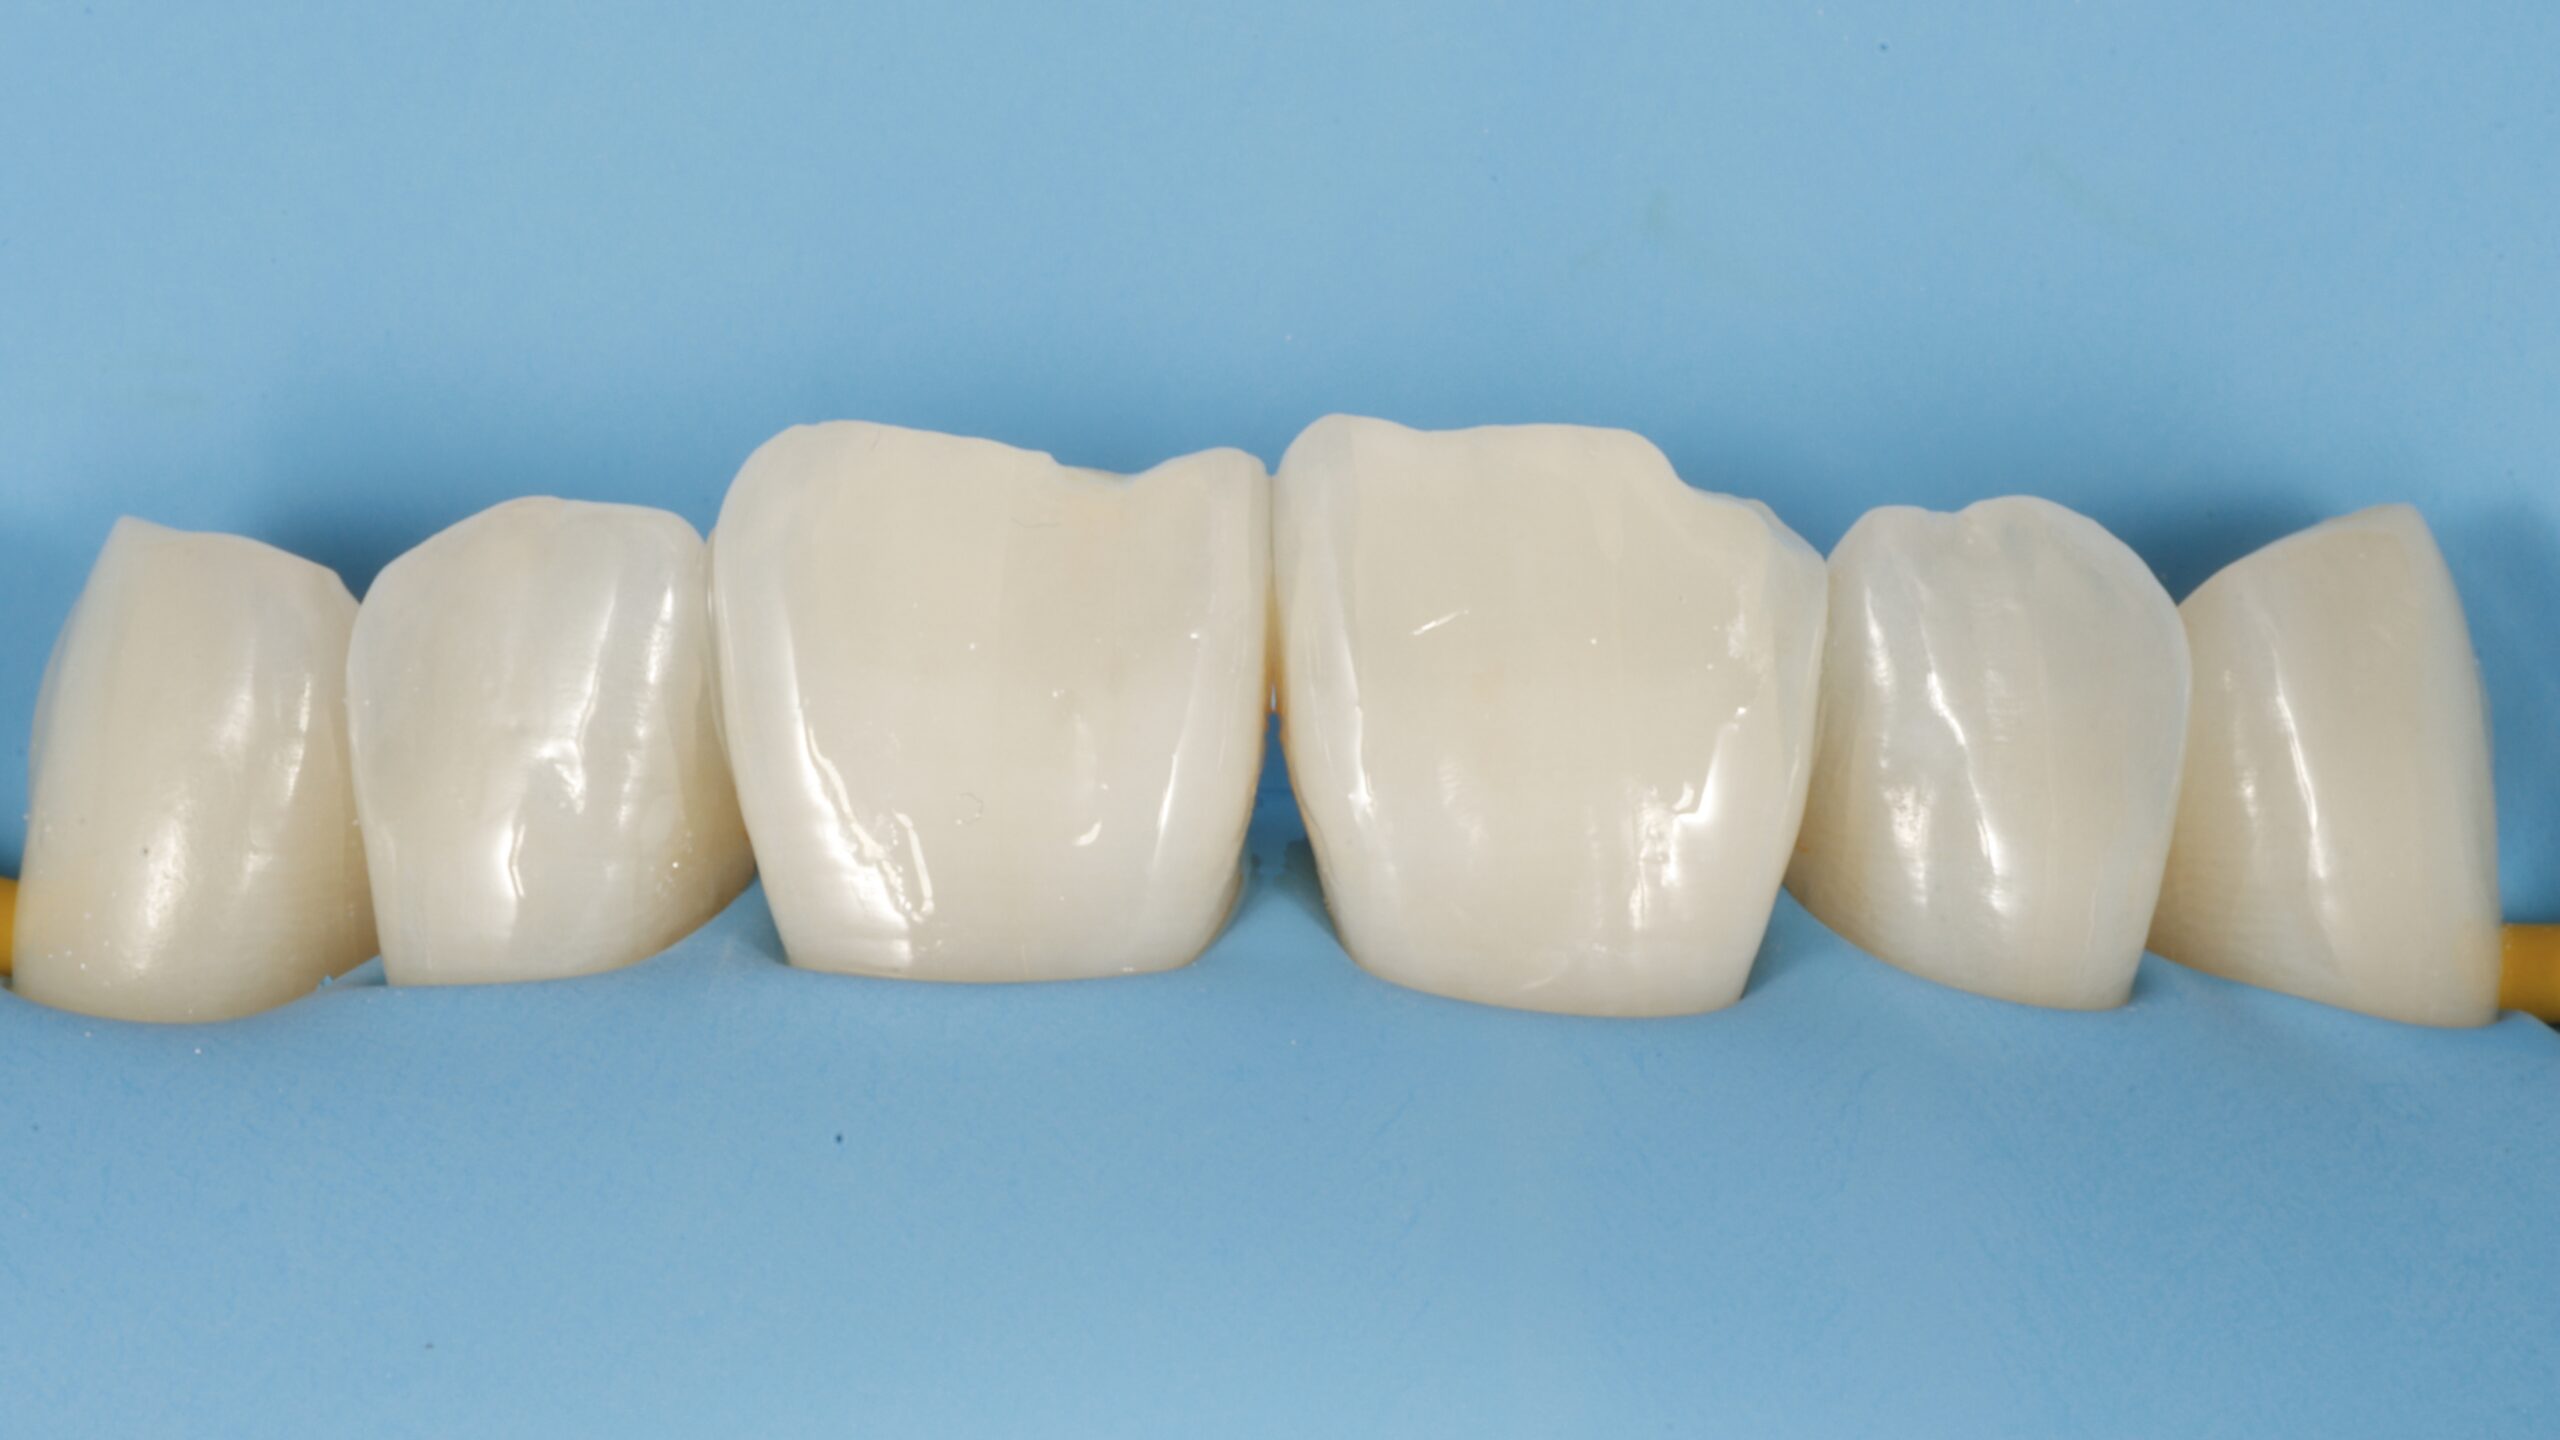 9 | Los dientes están debidamente grabados y el adhesivo no se percibe. Es una situación óptima para comenzar.